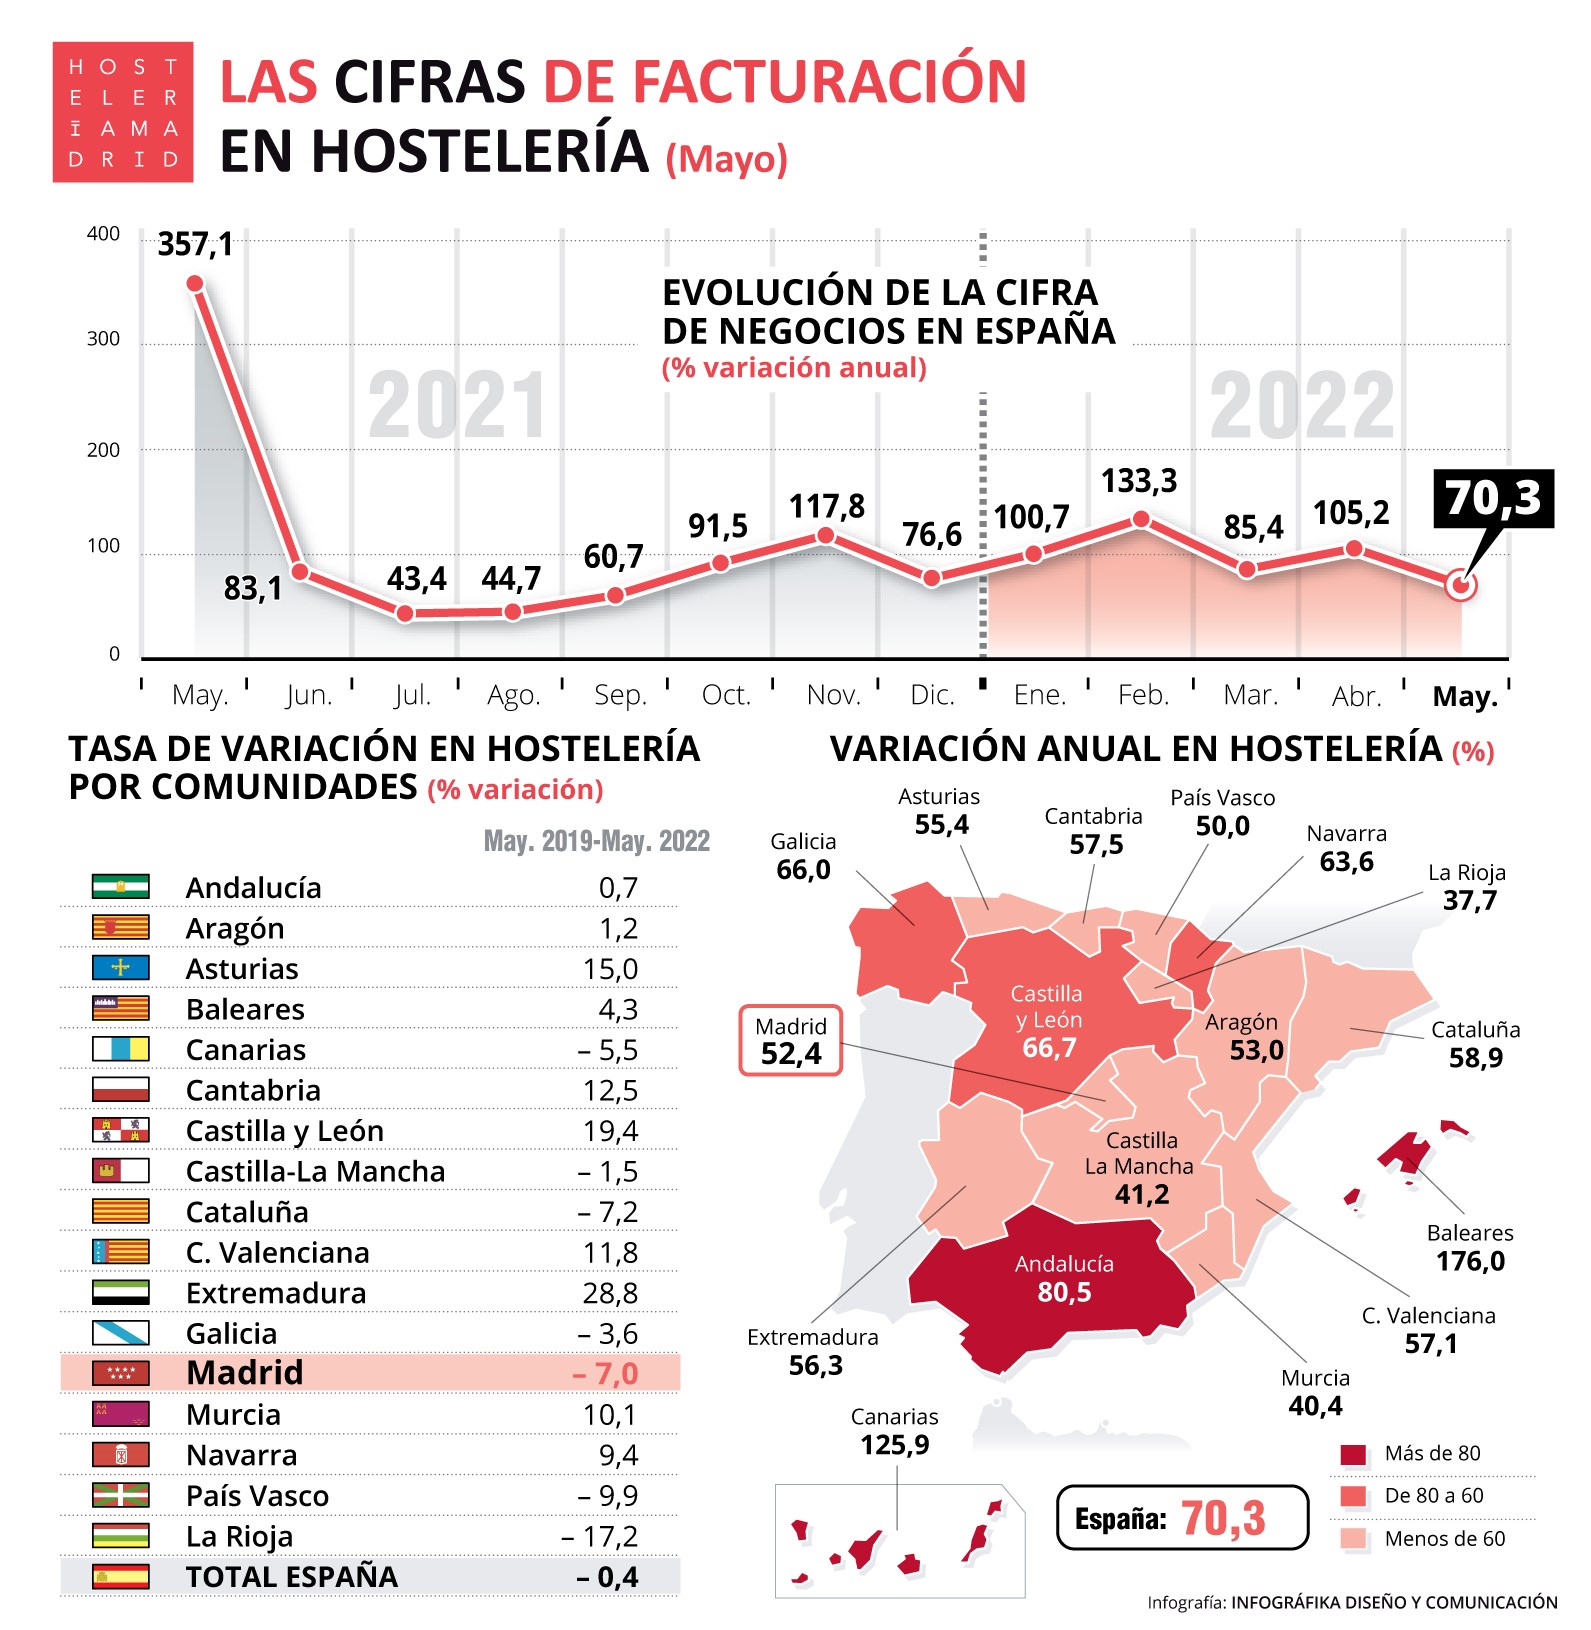 La cifra de negocio de la Hostelería de Madrid aumentó un 52,4% en mayo con respecto al mismo período en 2021 - La Viña